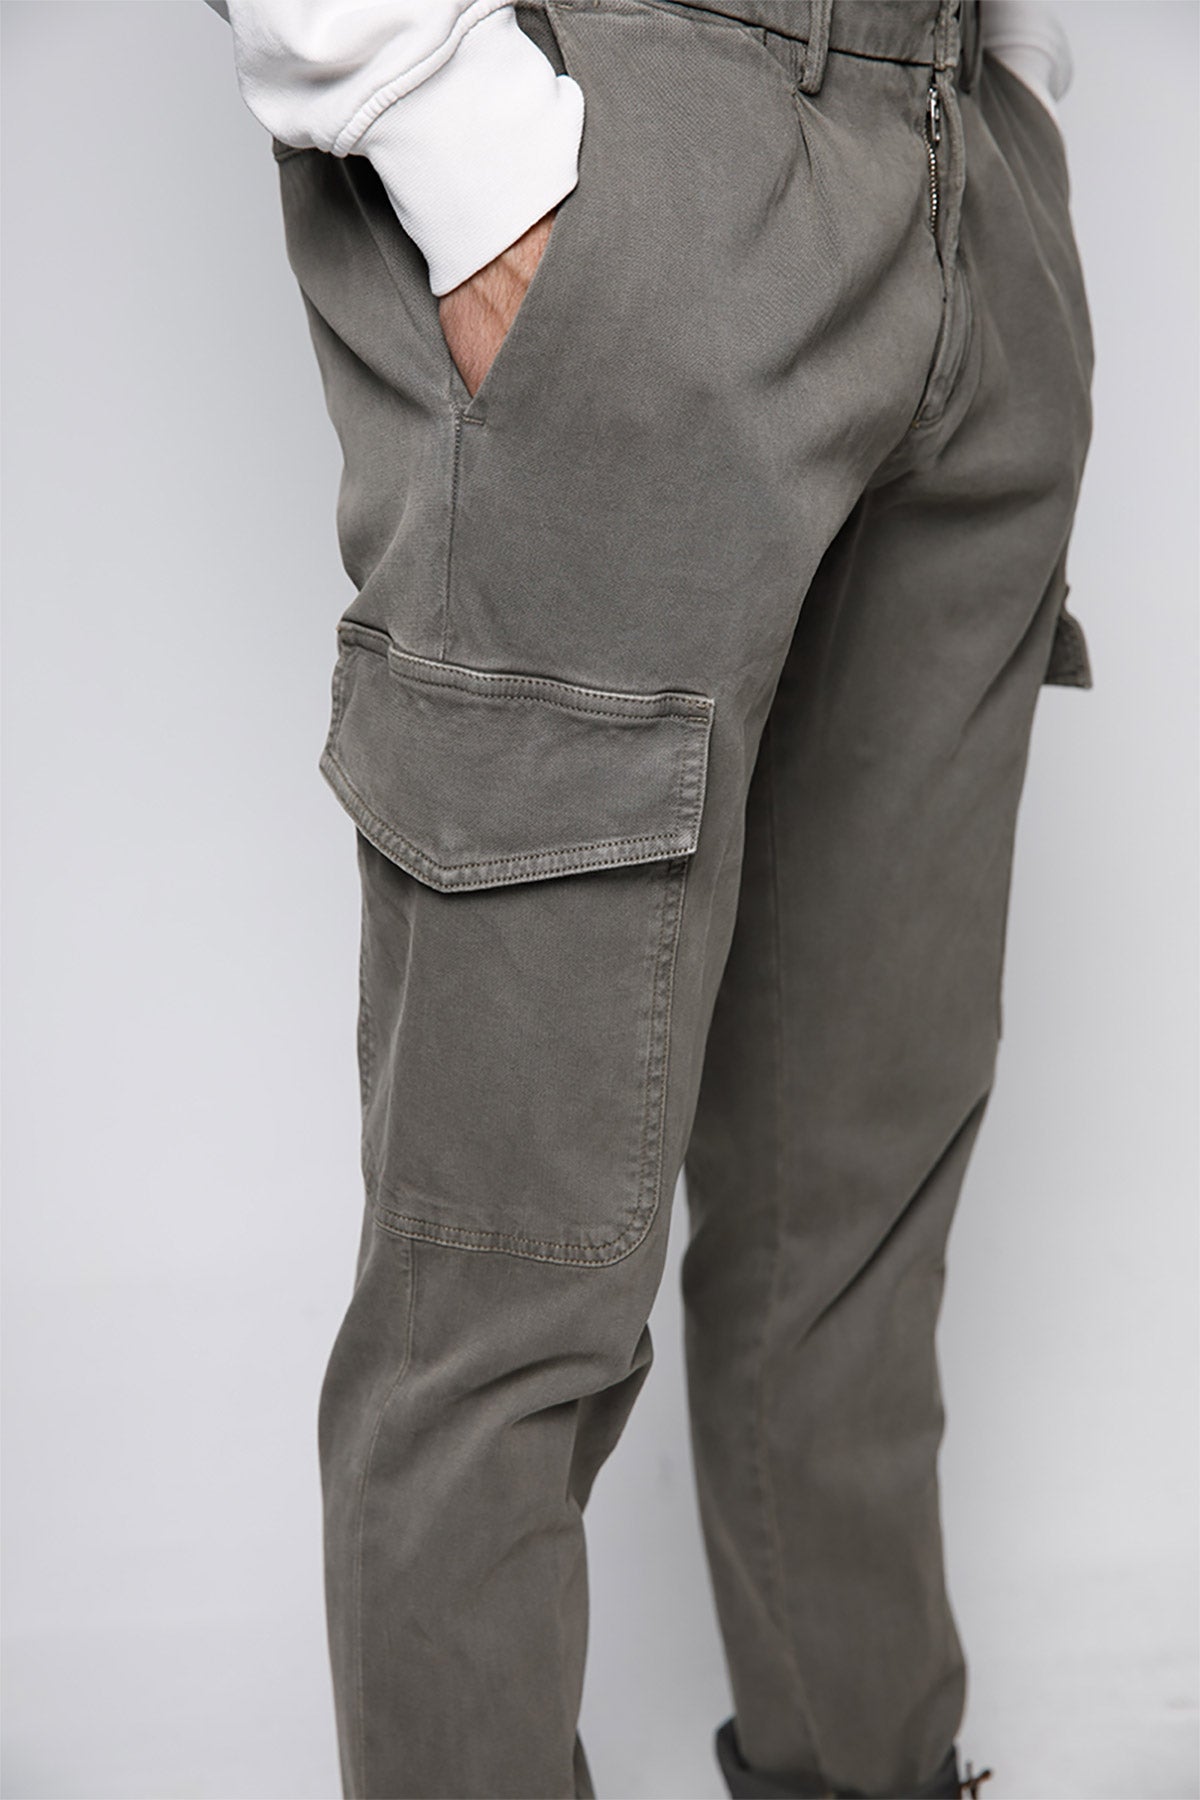 Fradi Smooth Fit Streç Kargo Pantolon-Libas Trendy Fashion Store